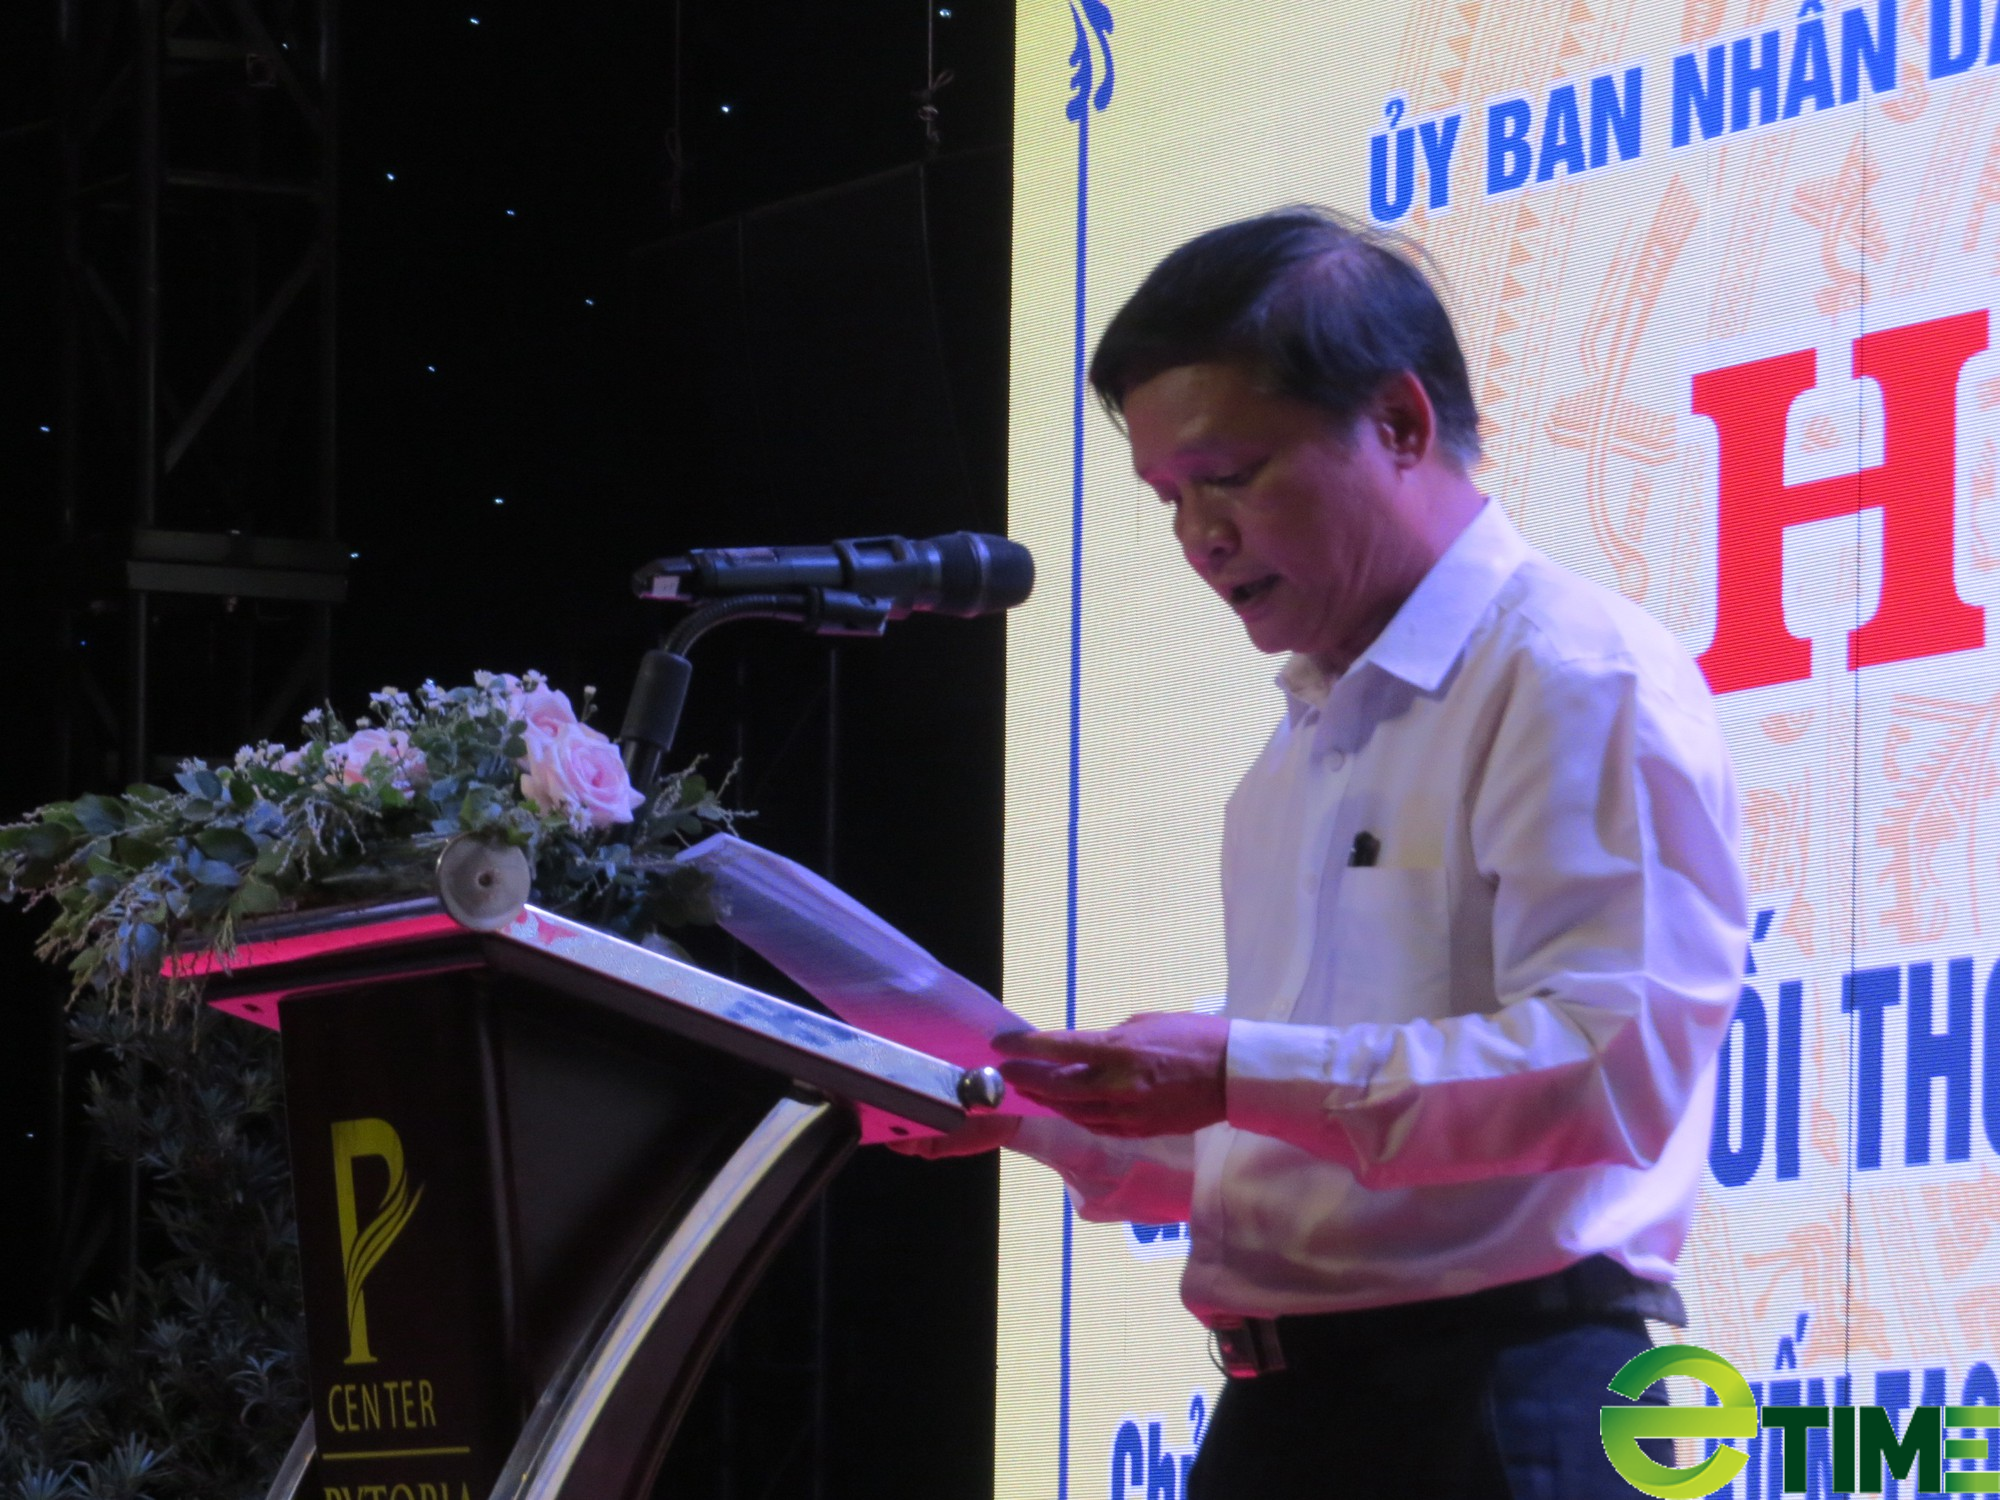 Phú Yên tổ chức đối thoại nhằm gỡ khó cho doanh nghiệp, nhà đầu tư - Ảnh 1.